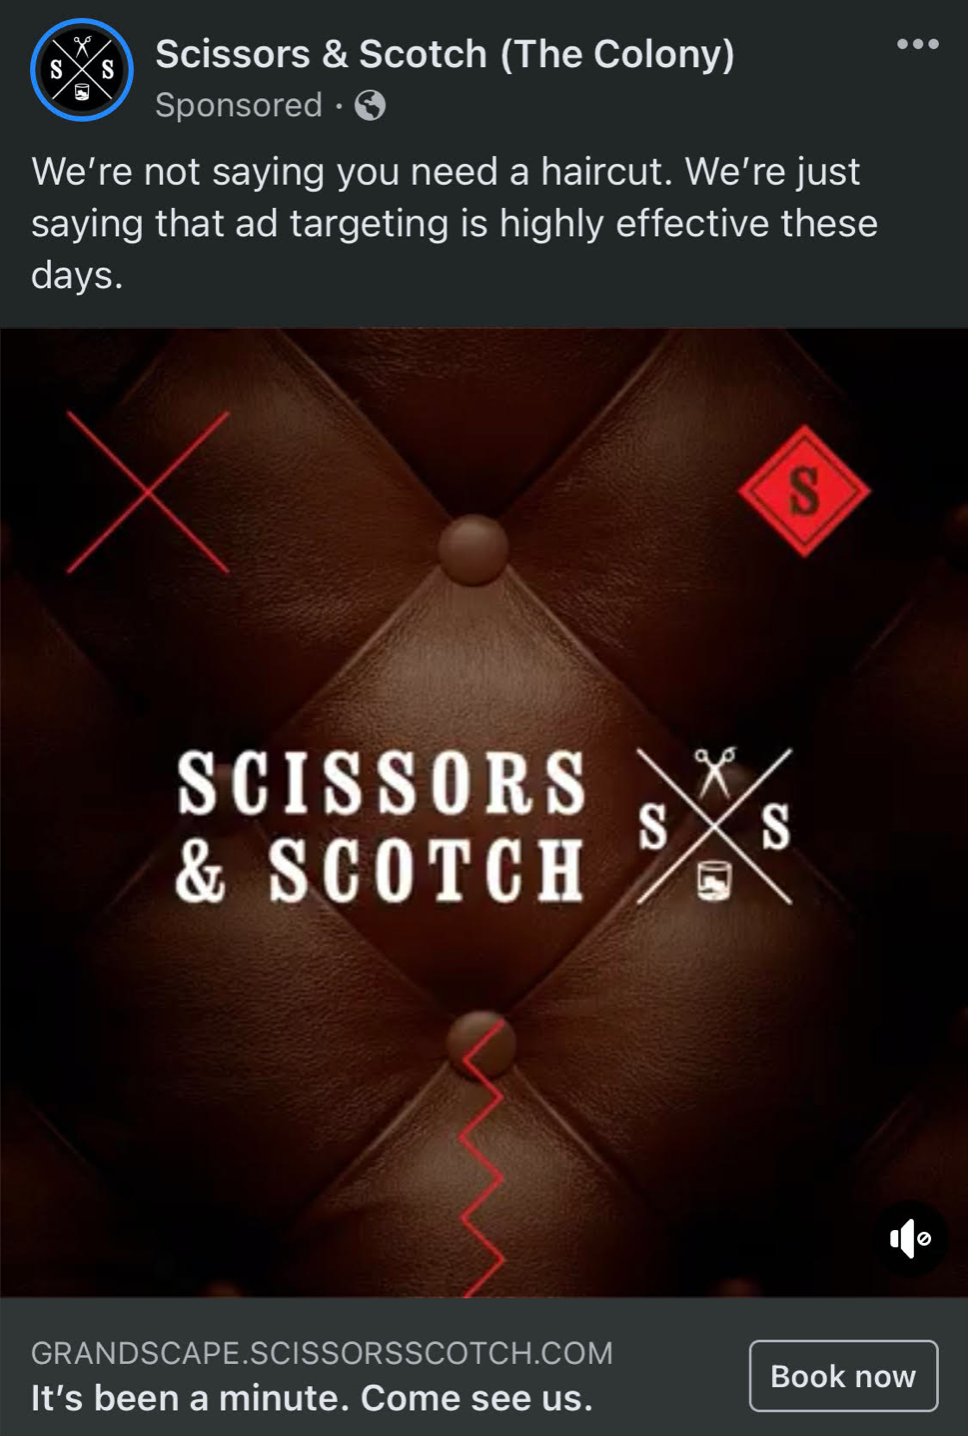 A screenshot of Scissors and Scotch's Facebook ad